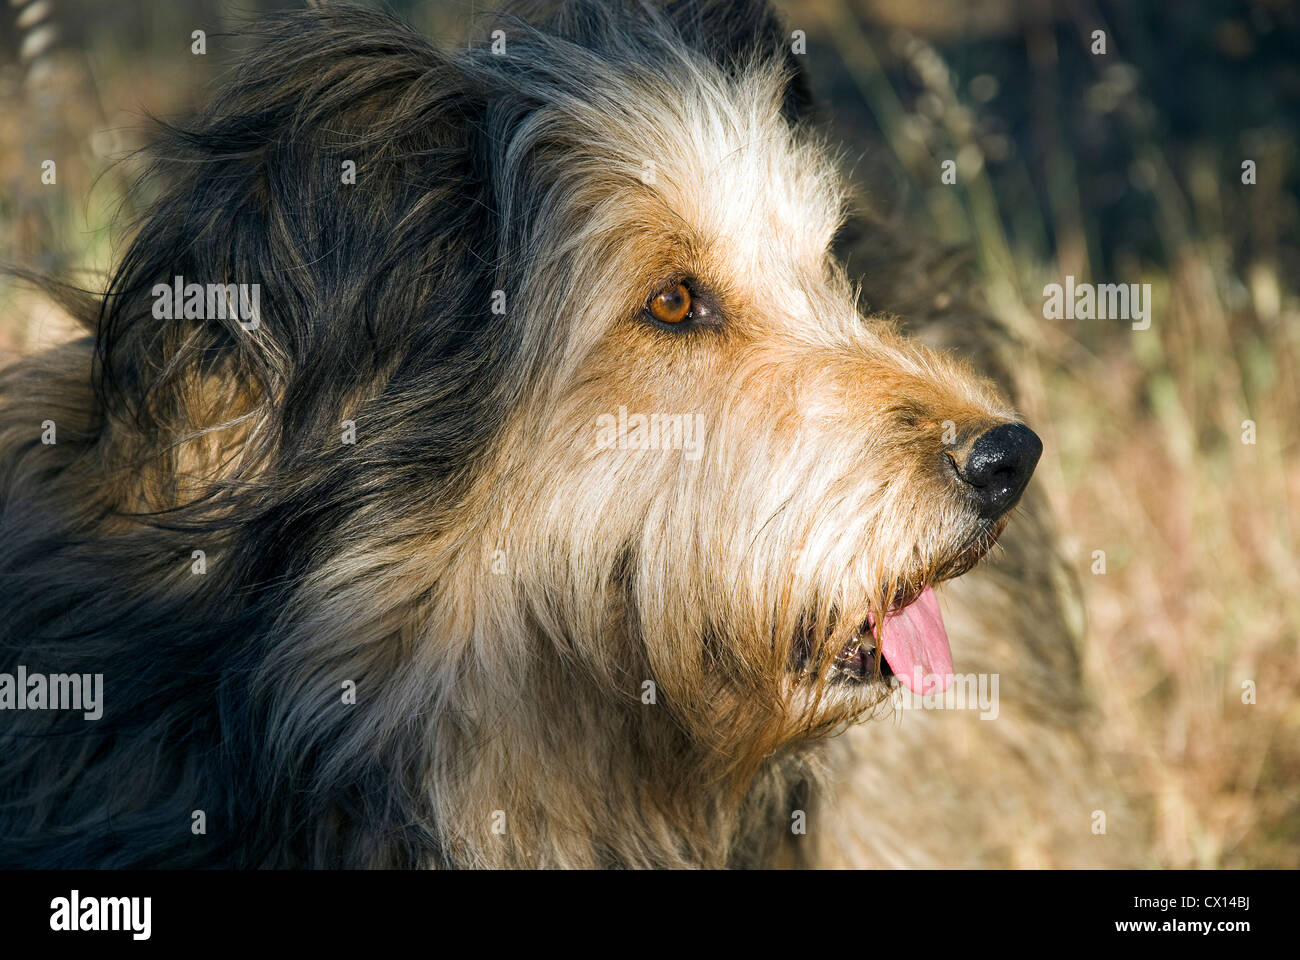 Portrait of a Briard dog in profile Stock Photo